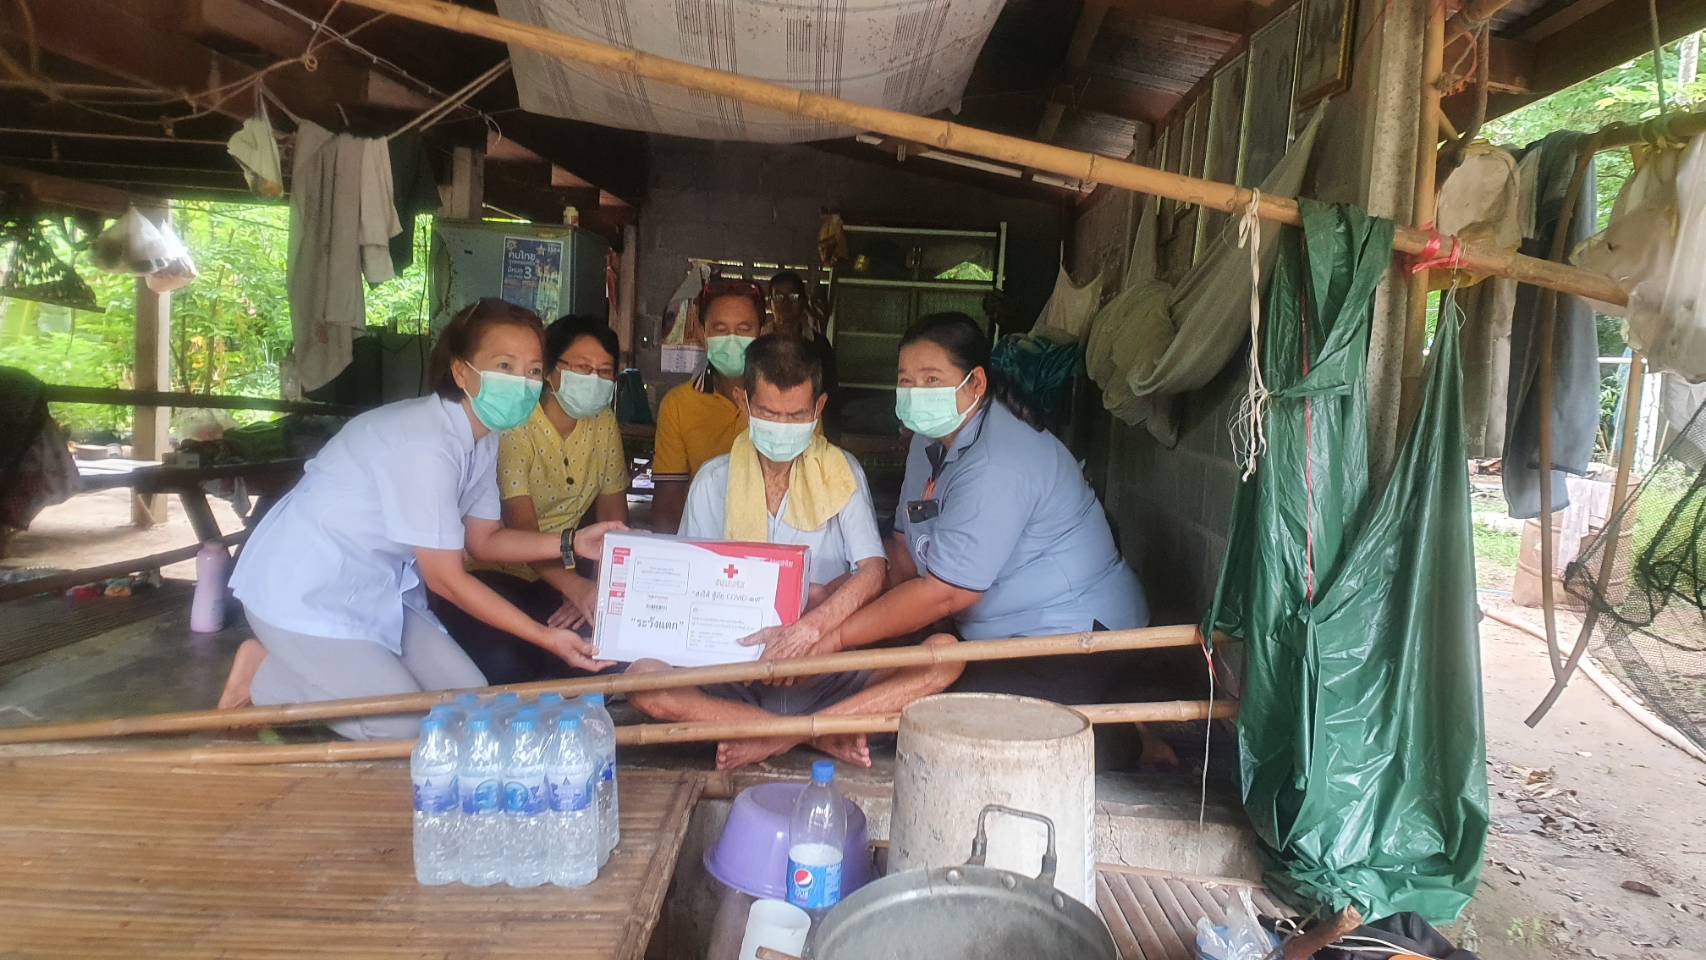 การช่วยเหลือประชาชนในสถานณ์การแพร่ระบาดโรคติดต่อเชื้อไวรัสโคโรนา (COVID – 2019)